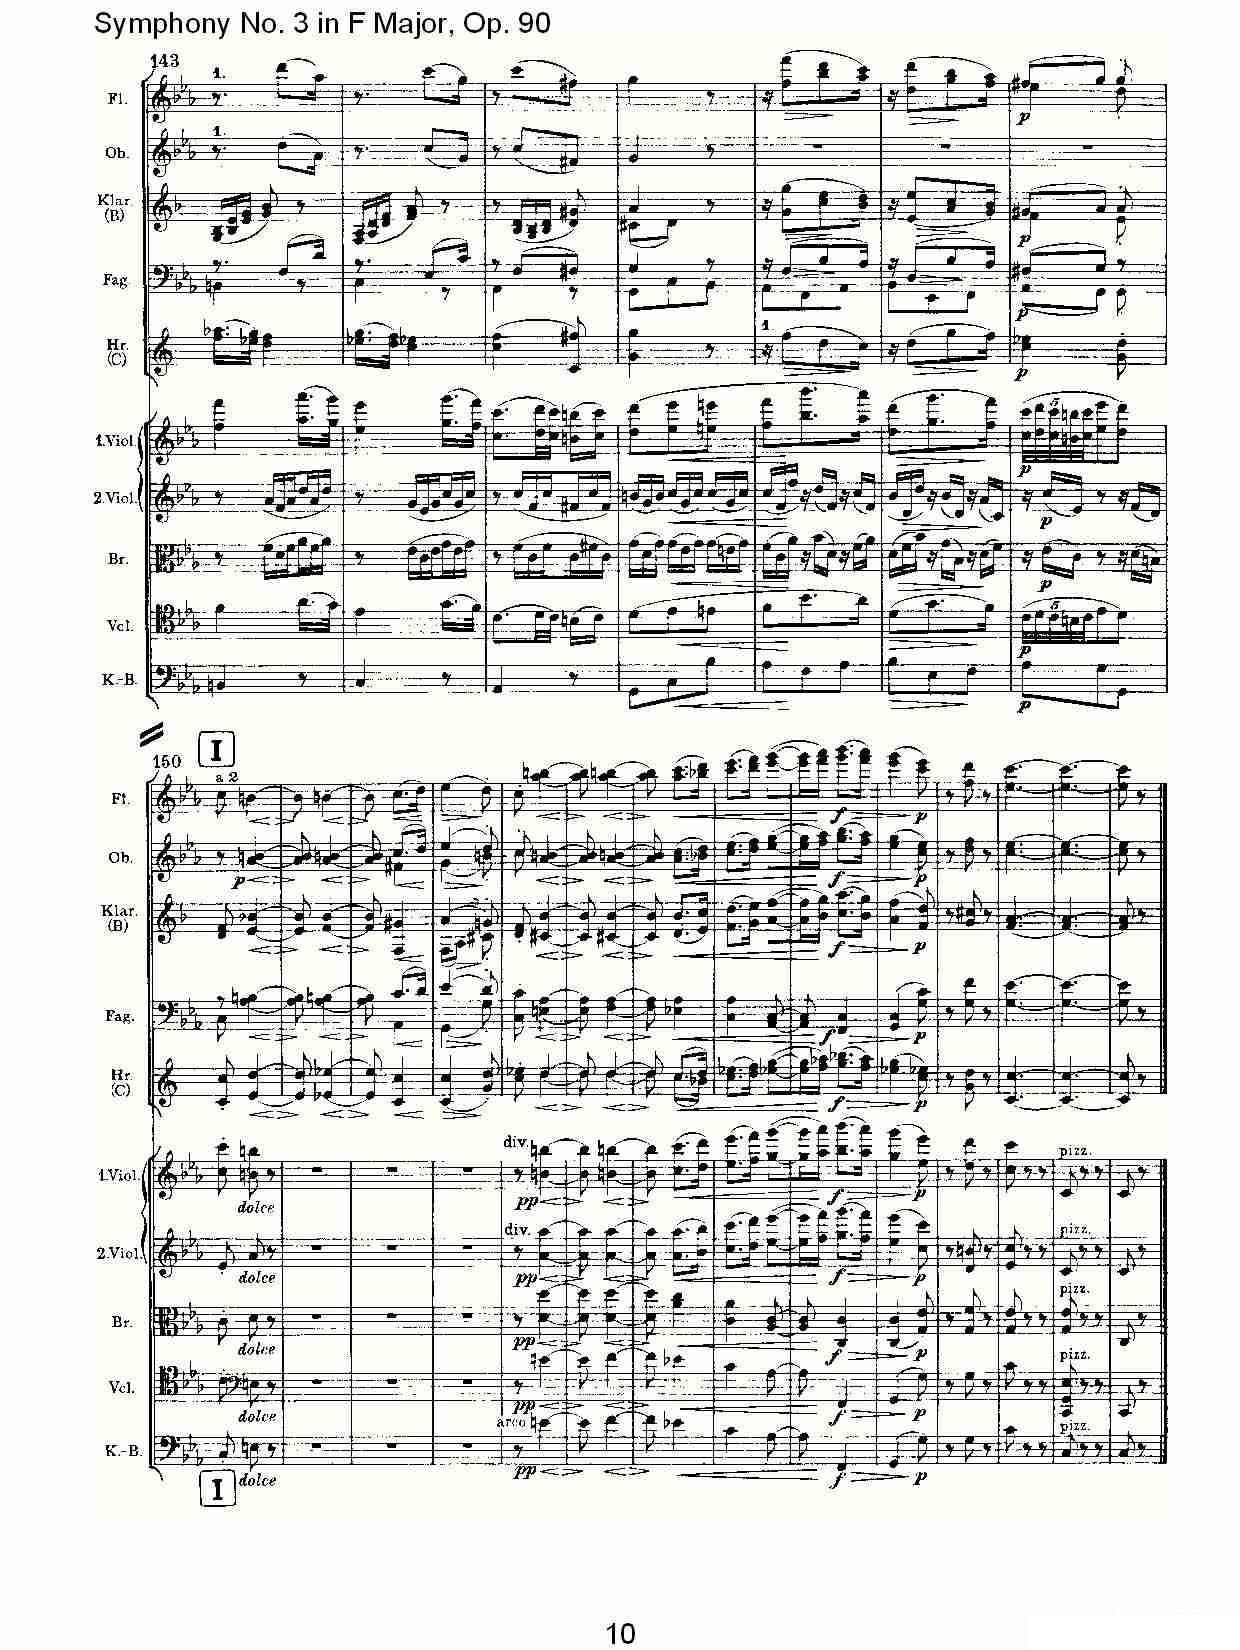 曲谱约翰内斯·勃拉姆斯《F大调第三交响曲, Op.90第三乐章》（第10页）